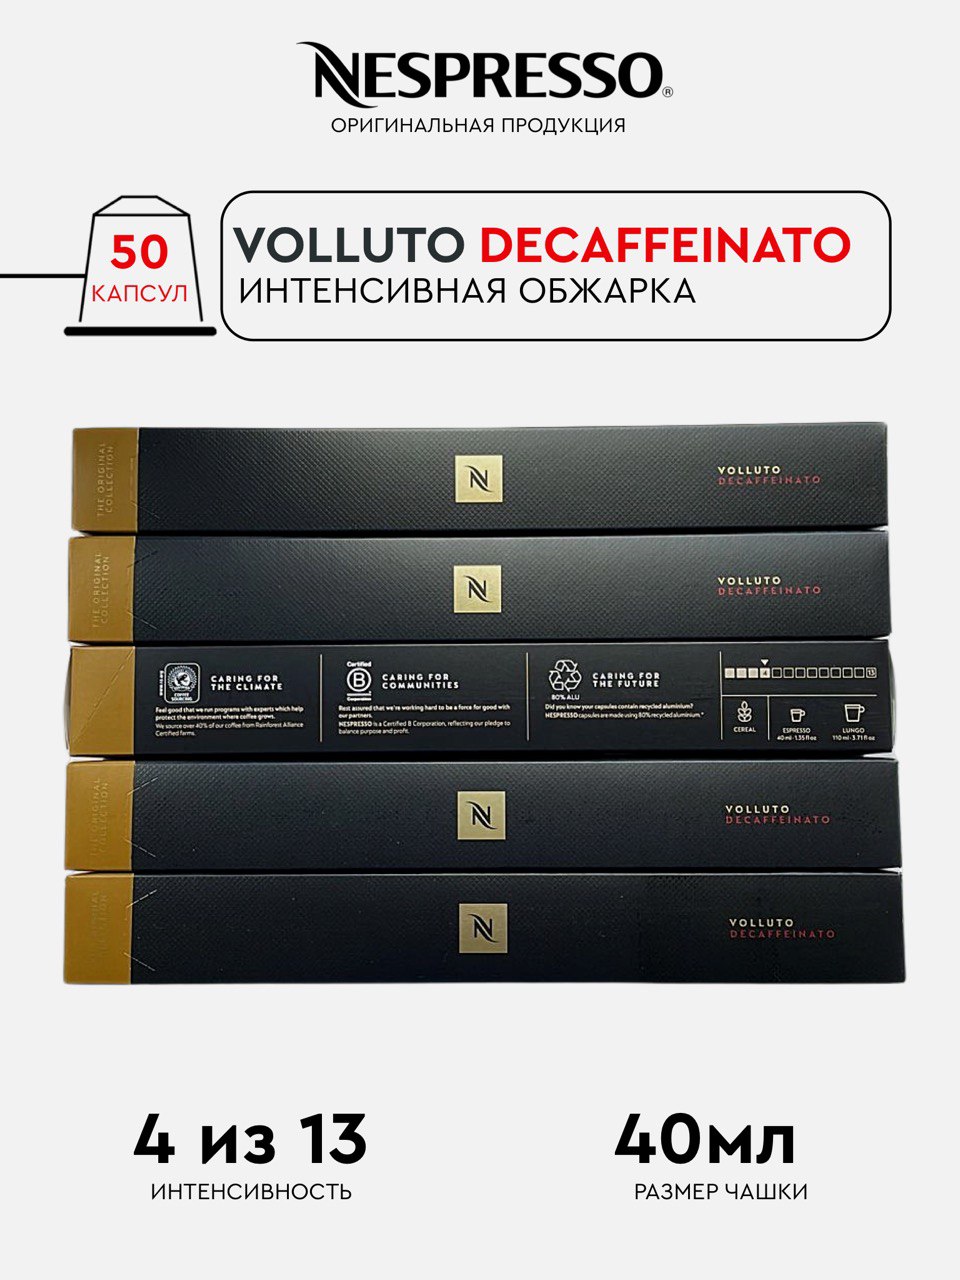 Капсулы Nespresso Volluto Decaffeinato для кофемашины Nespresso Original, 50 капсул